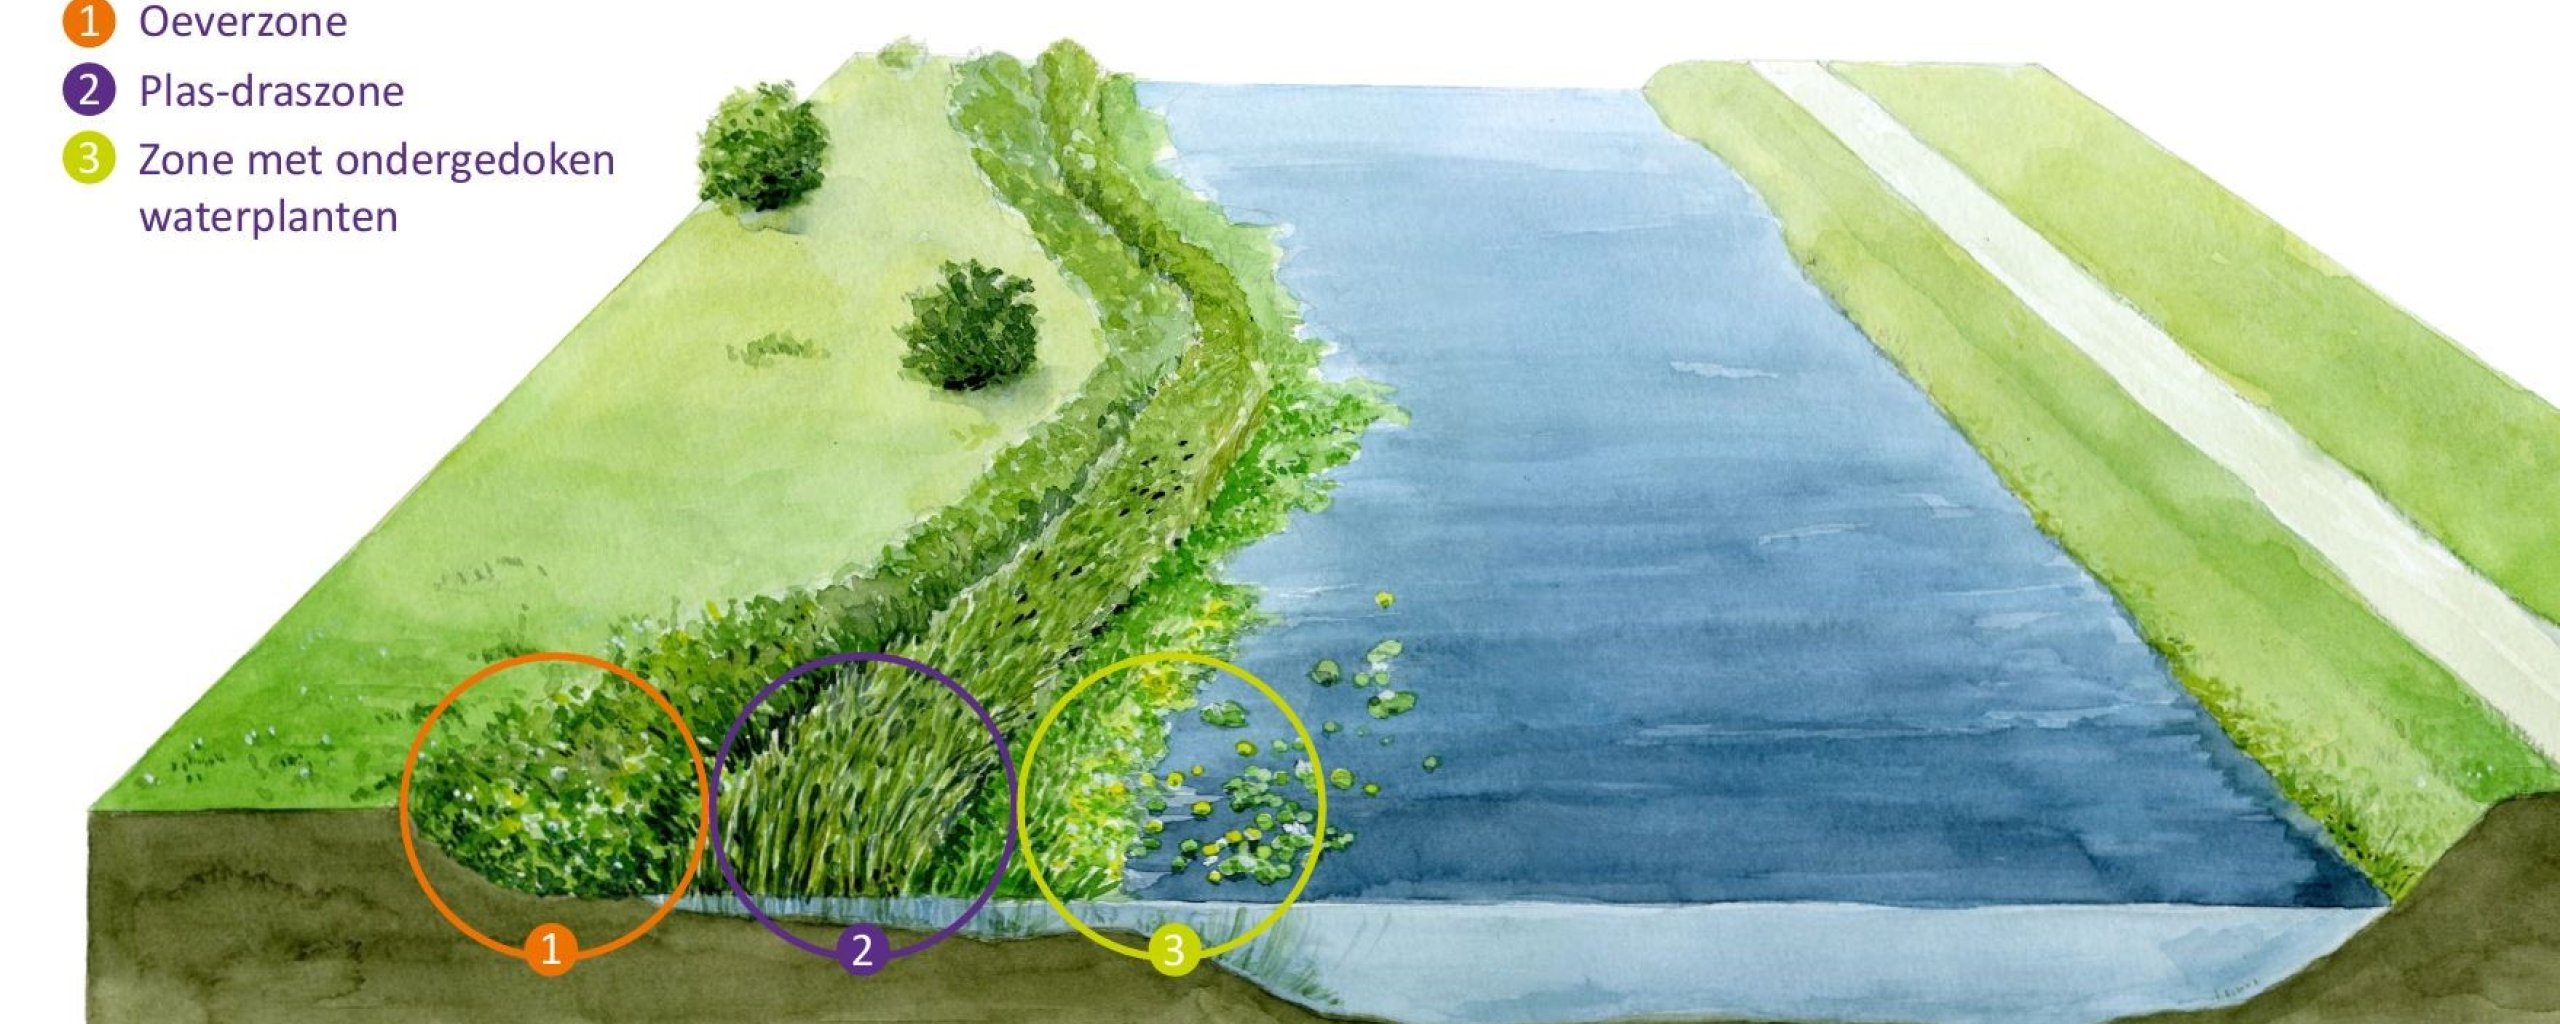 Een natuurvriendelijke oever is onder te verdelen in drie zones: oeverzone, plas-draszone en een zone met ondergedoken waterplanten